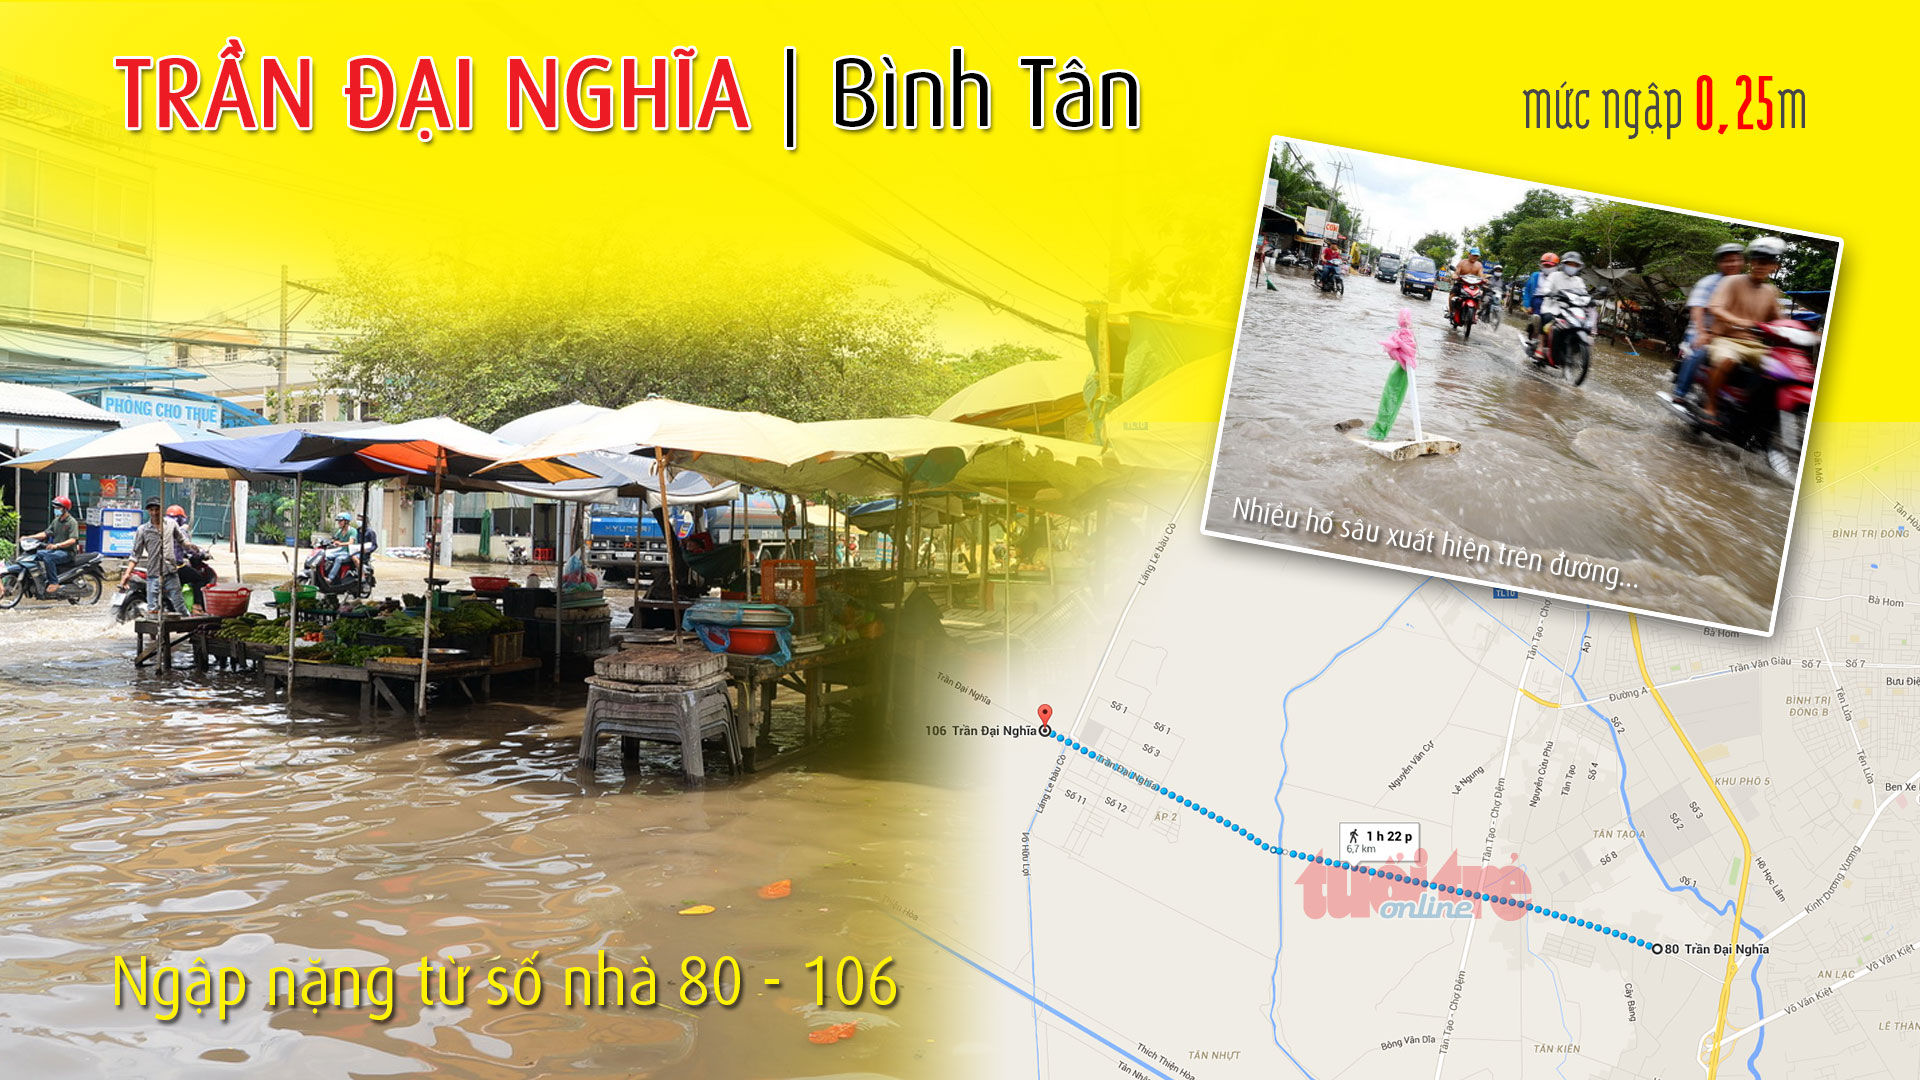 Điểm ngập ở đường Trần Đại Nghĩa (Bình Tân), thuộc 1 trong 66 điểm ngập ở TP.HCM trong cơn mưa chiều 15-9-2015 - Đồ họa: Việt Anh - T.Thiên